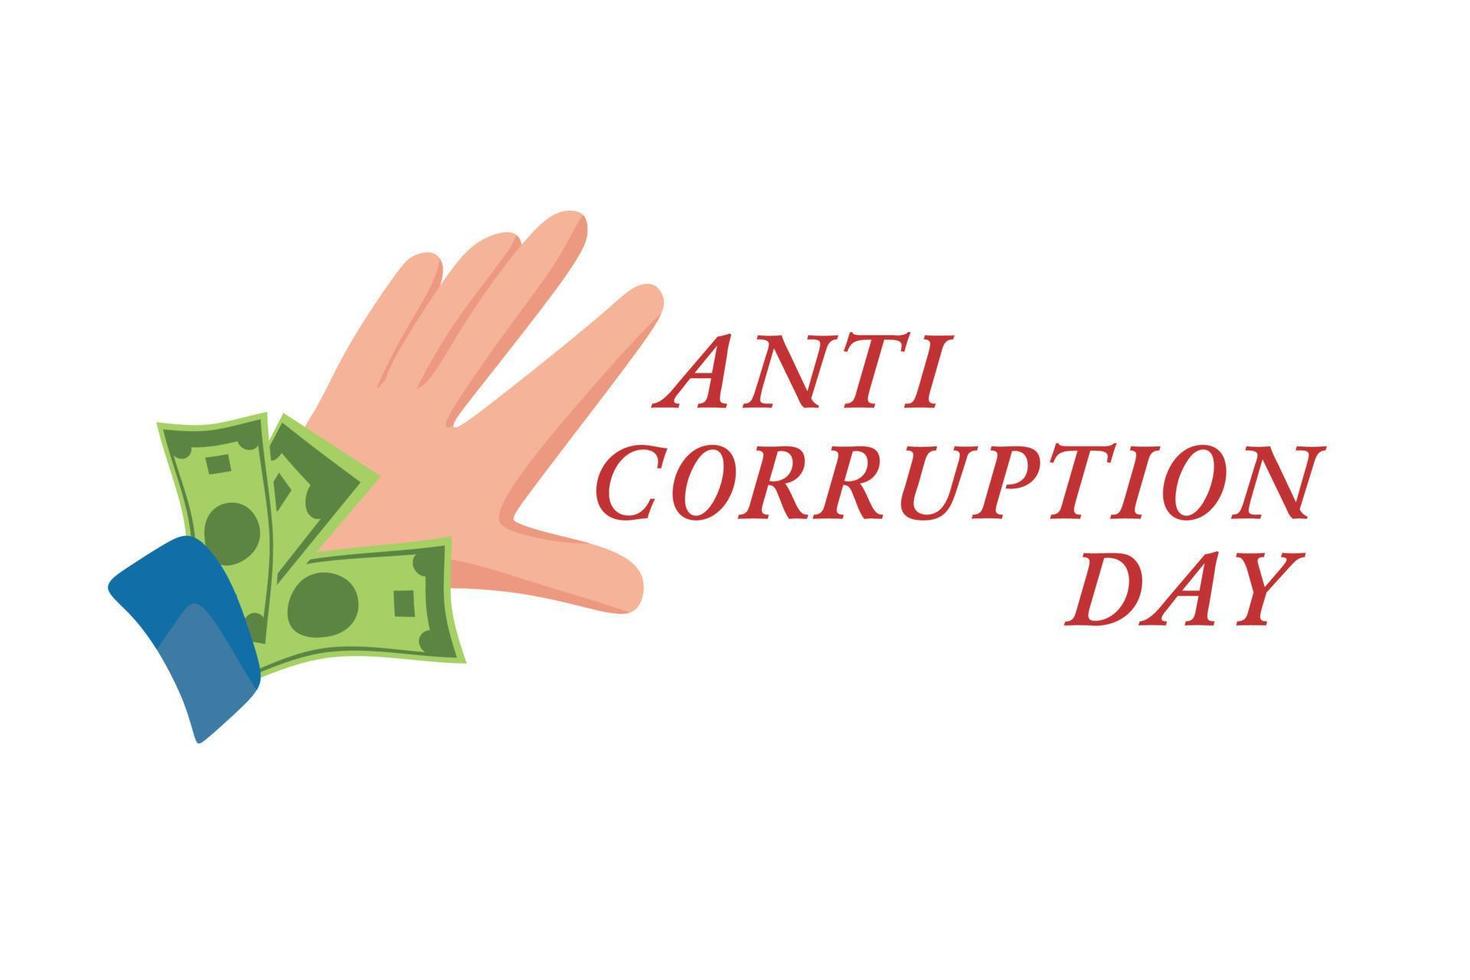 día internacional contra la corrupción, 9 de diciembre. cartel o publicación en internet. ilustración de dibujos animados vectoriales. vector